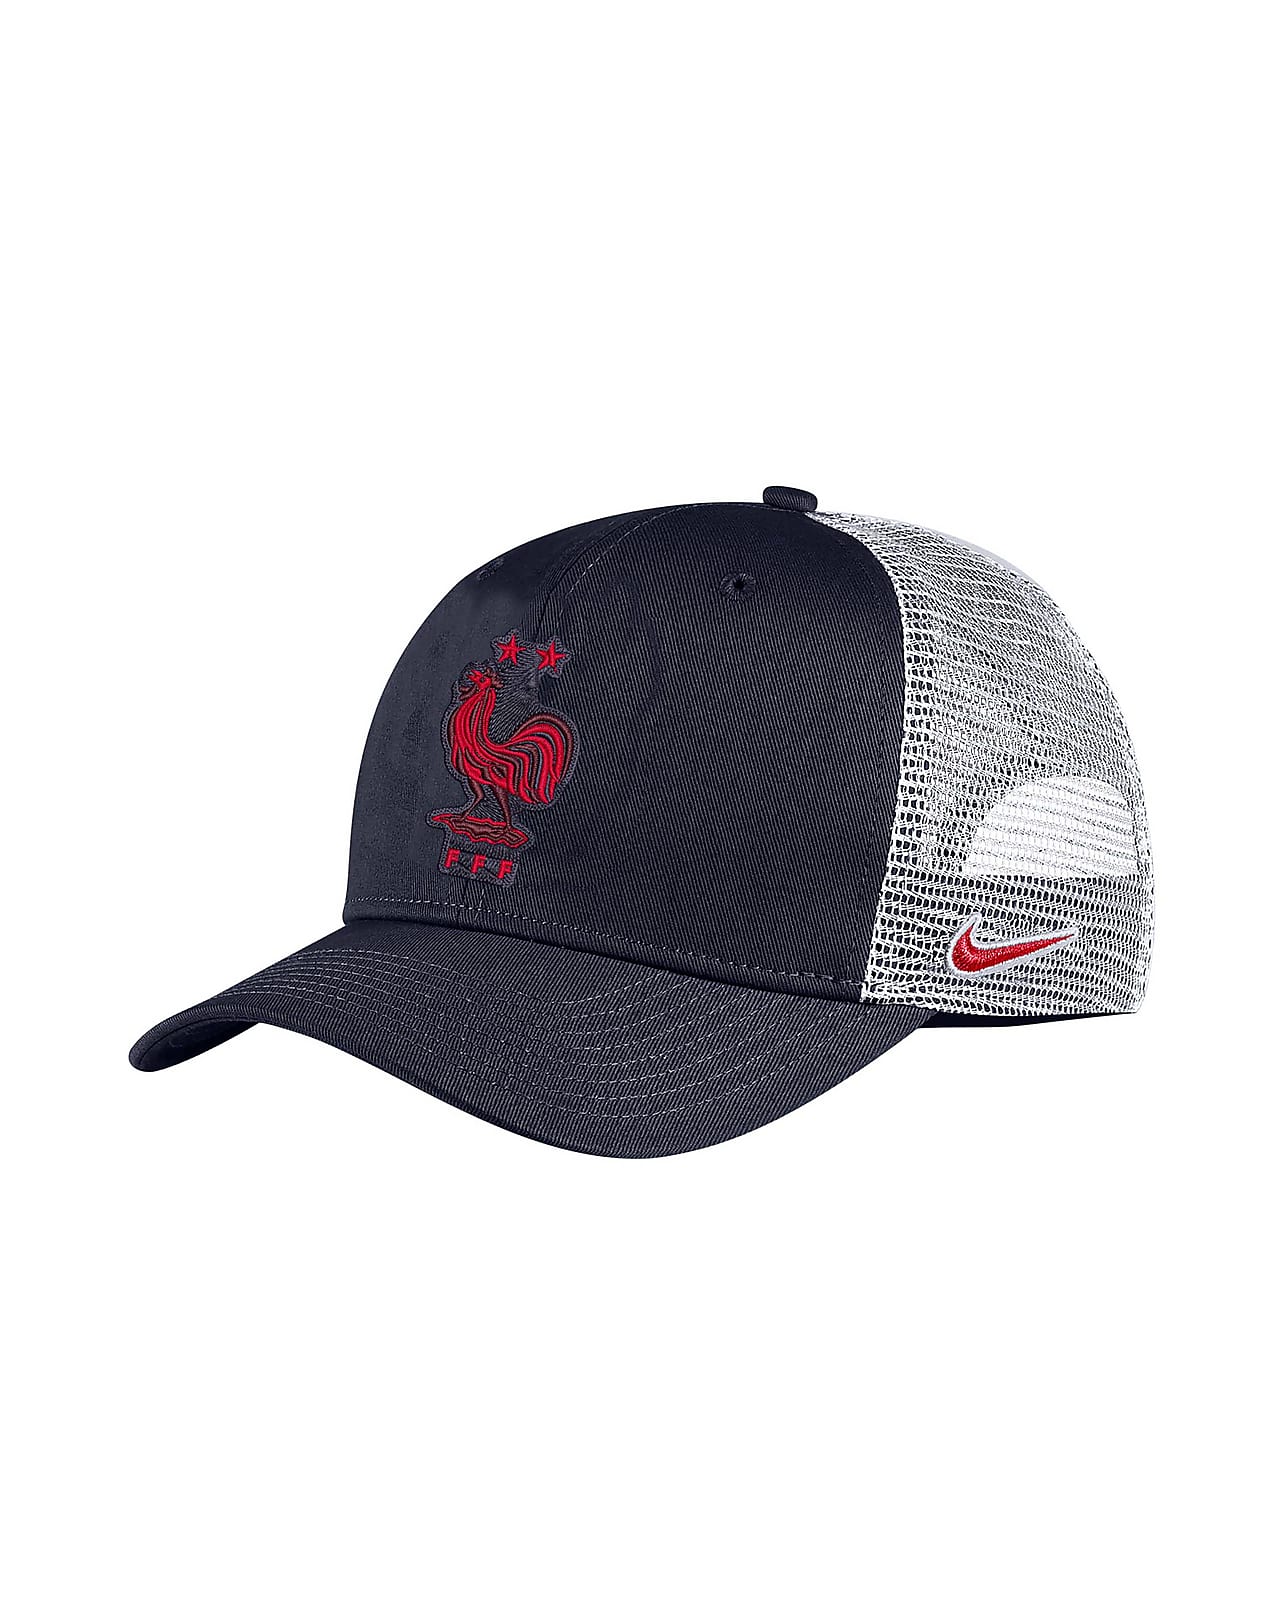 FFF Classic 99 Men's Nike Trucker Hat